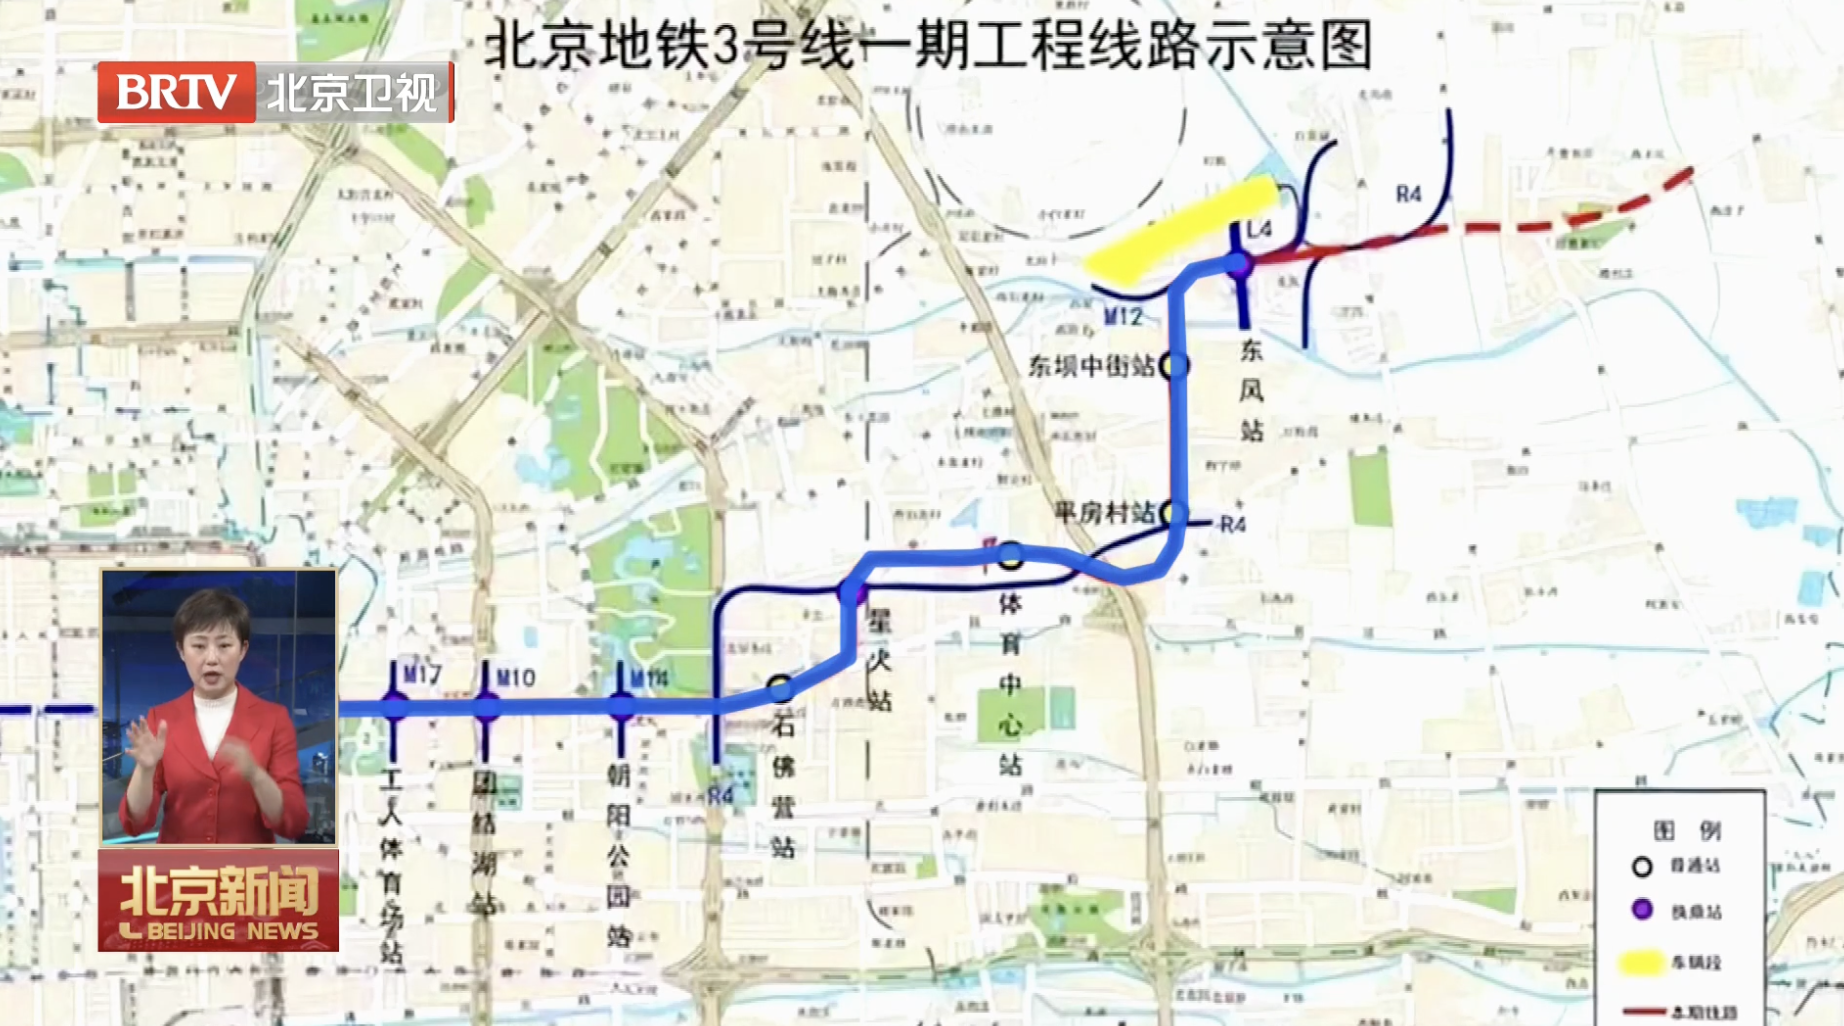 北京在建地铁线路图图片